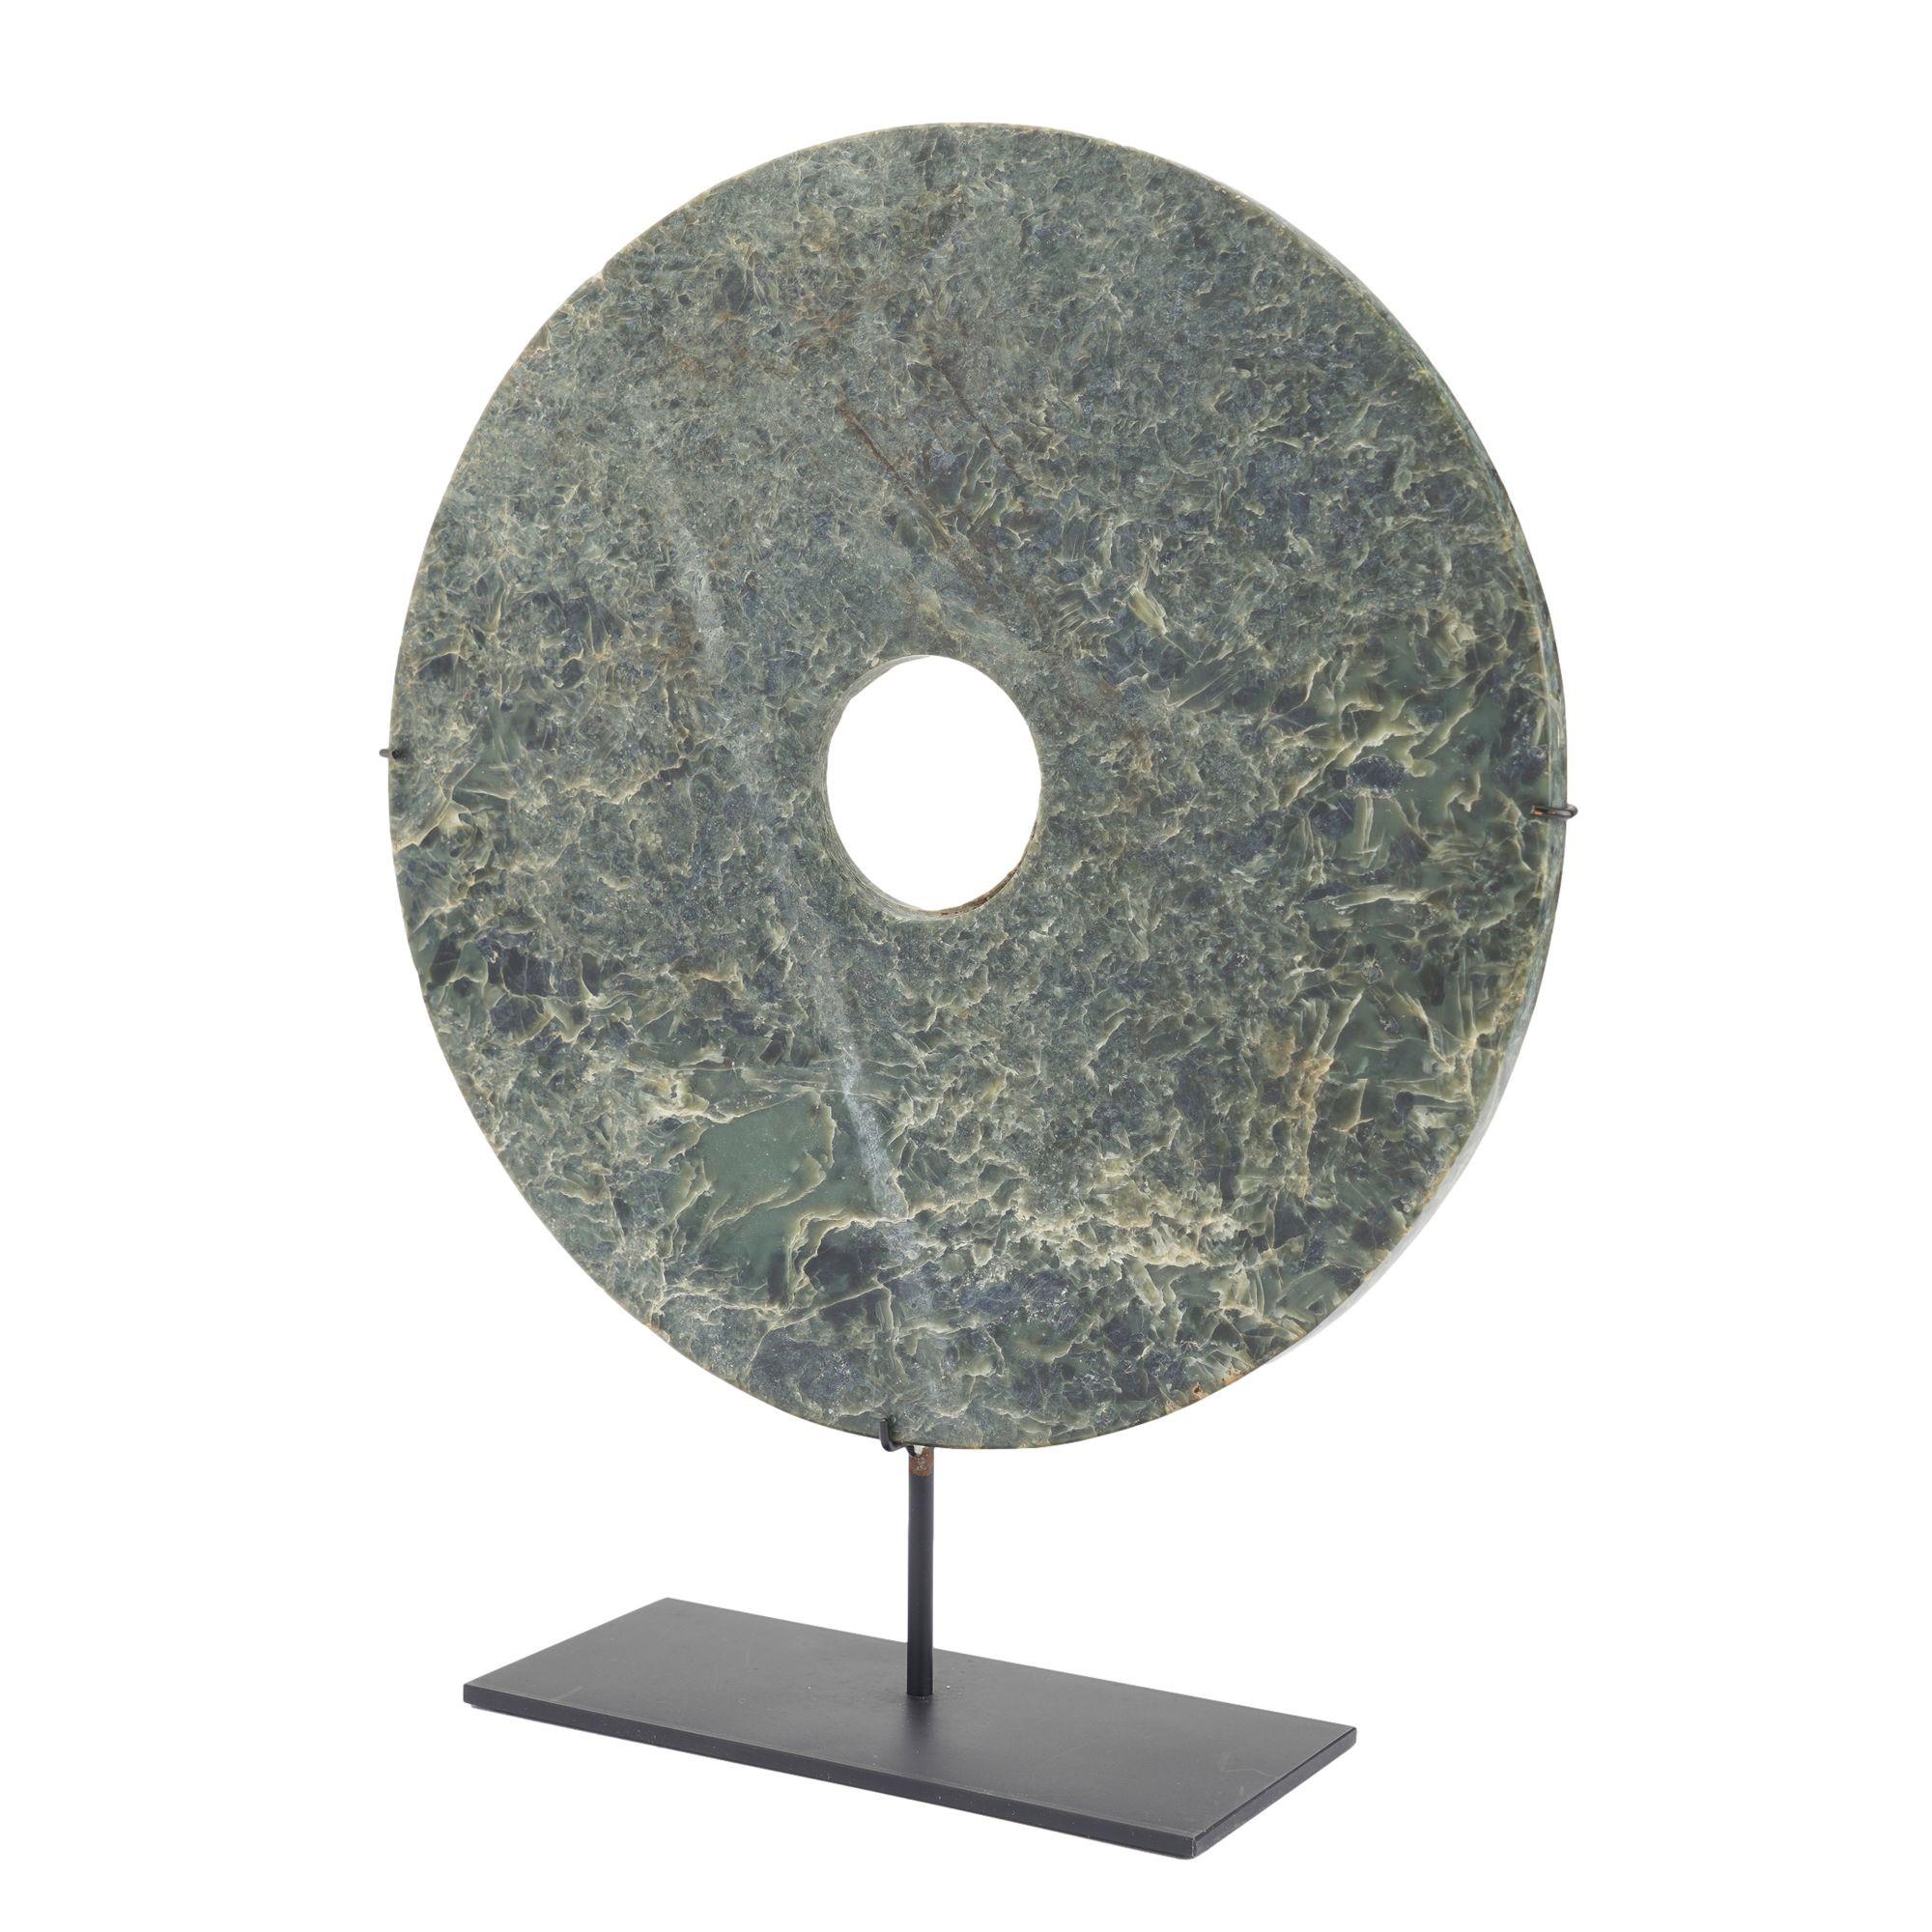 Bi-disque circulaire en jade sculpté monté sur un support personnalisé. Le marbre est riche en tons bleus, verts, havane et bruns et présente une grande profondeur visuelle. En Chine, le Bi est un symbole de moralité et de rang social, utilisé de